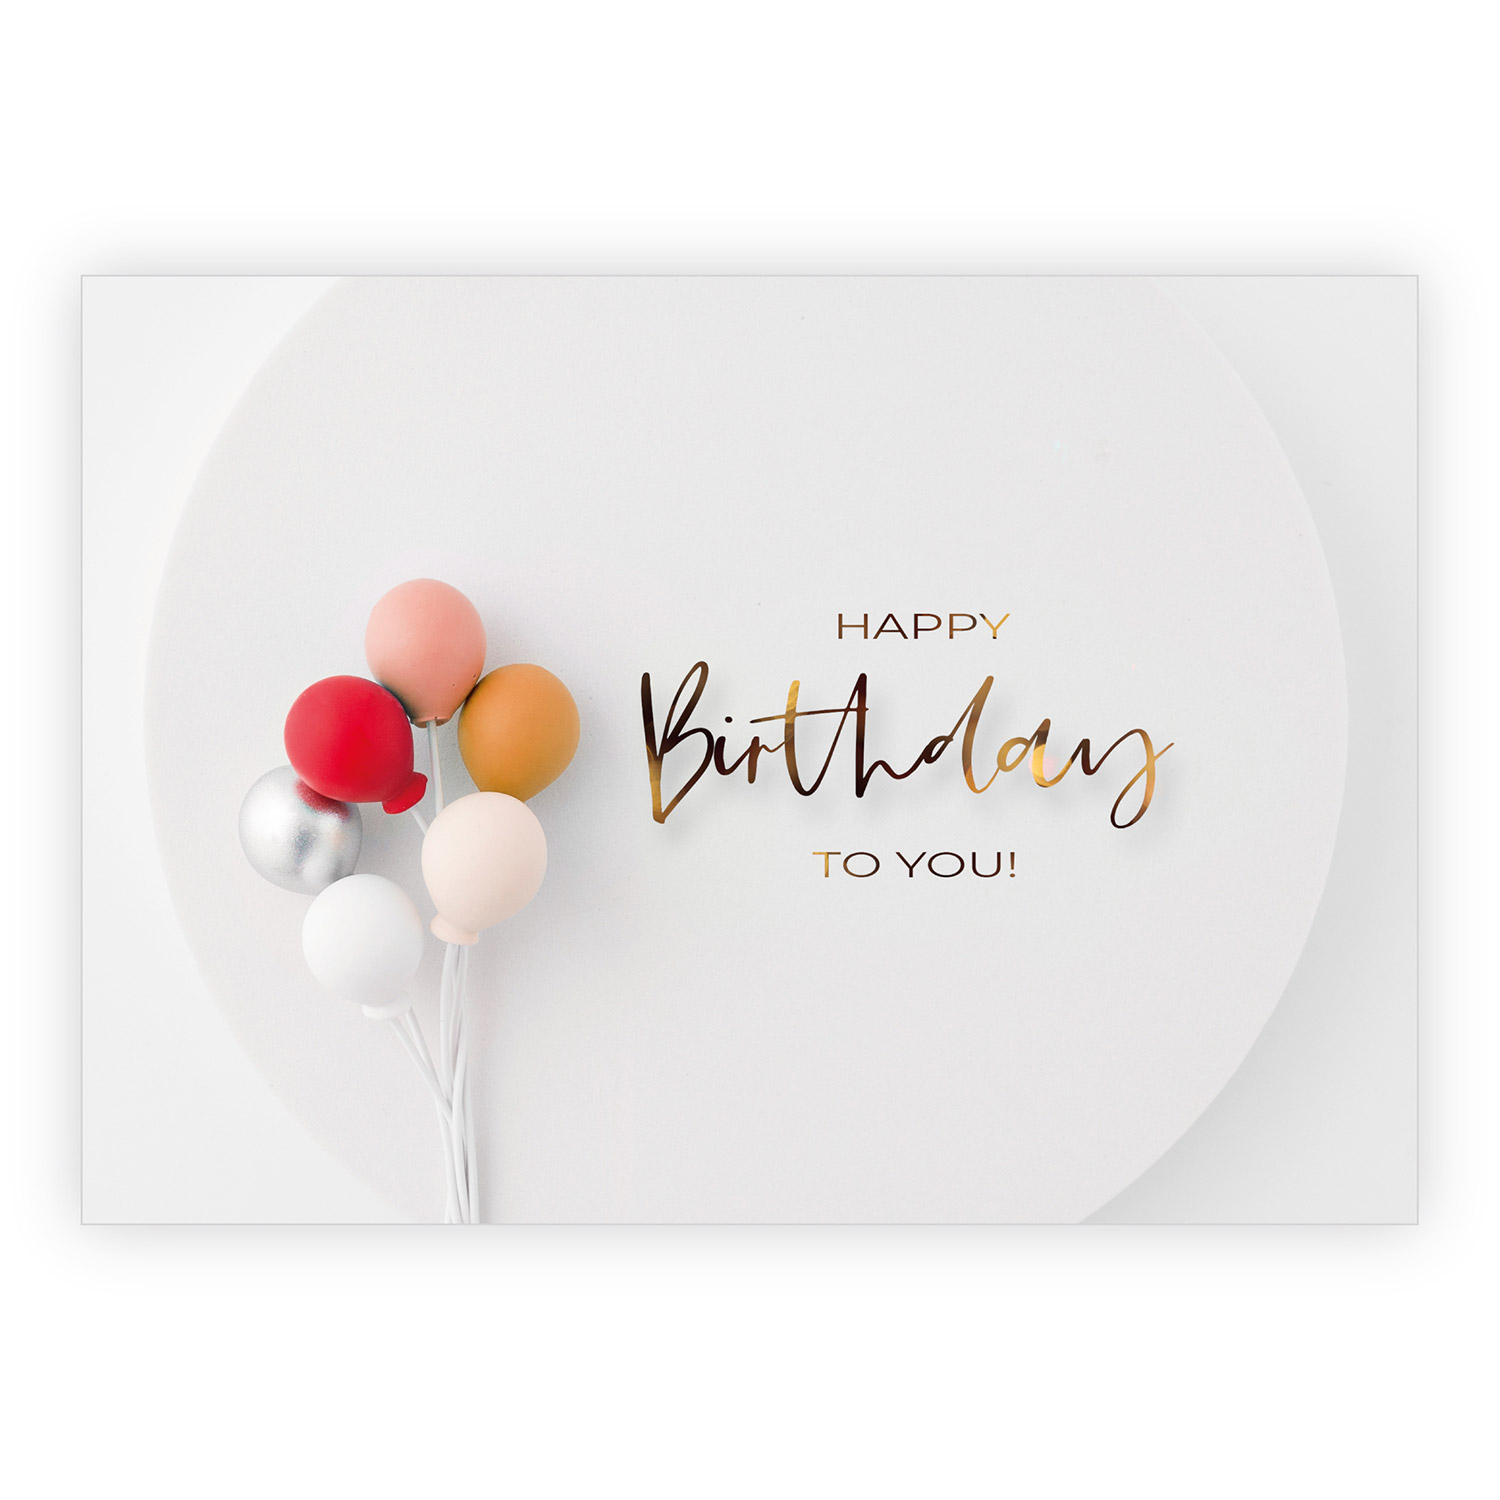 Trend Geburtstags Grußkarte mit Ballons:  Happy Birthday to you 1 nachhaltig produzierte Klappkarte inklusive Umschlag  made in germany von Kartenkaufrausch.de